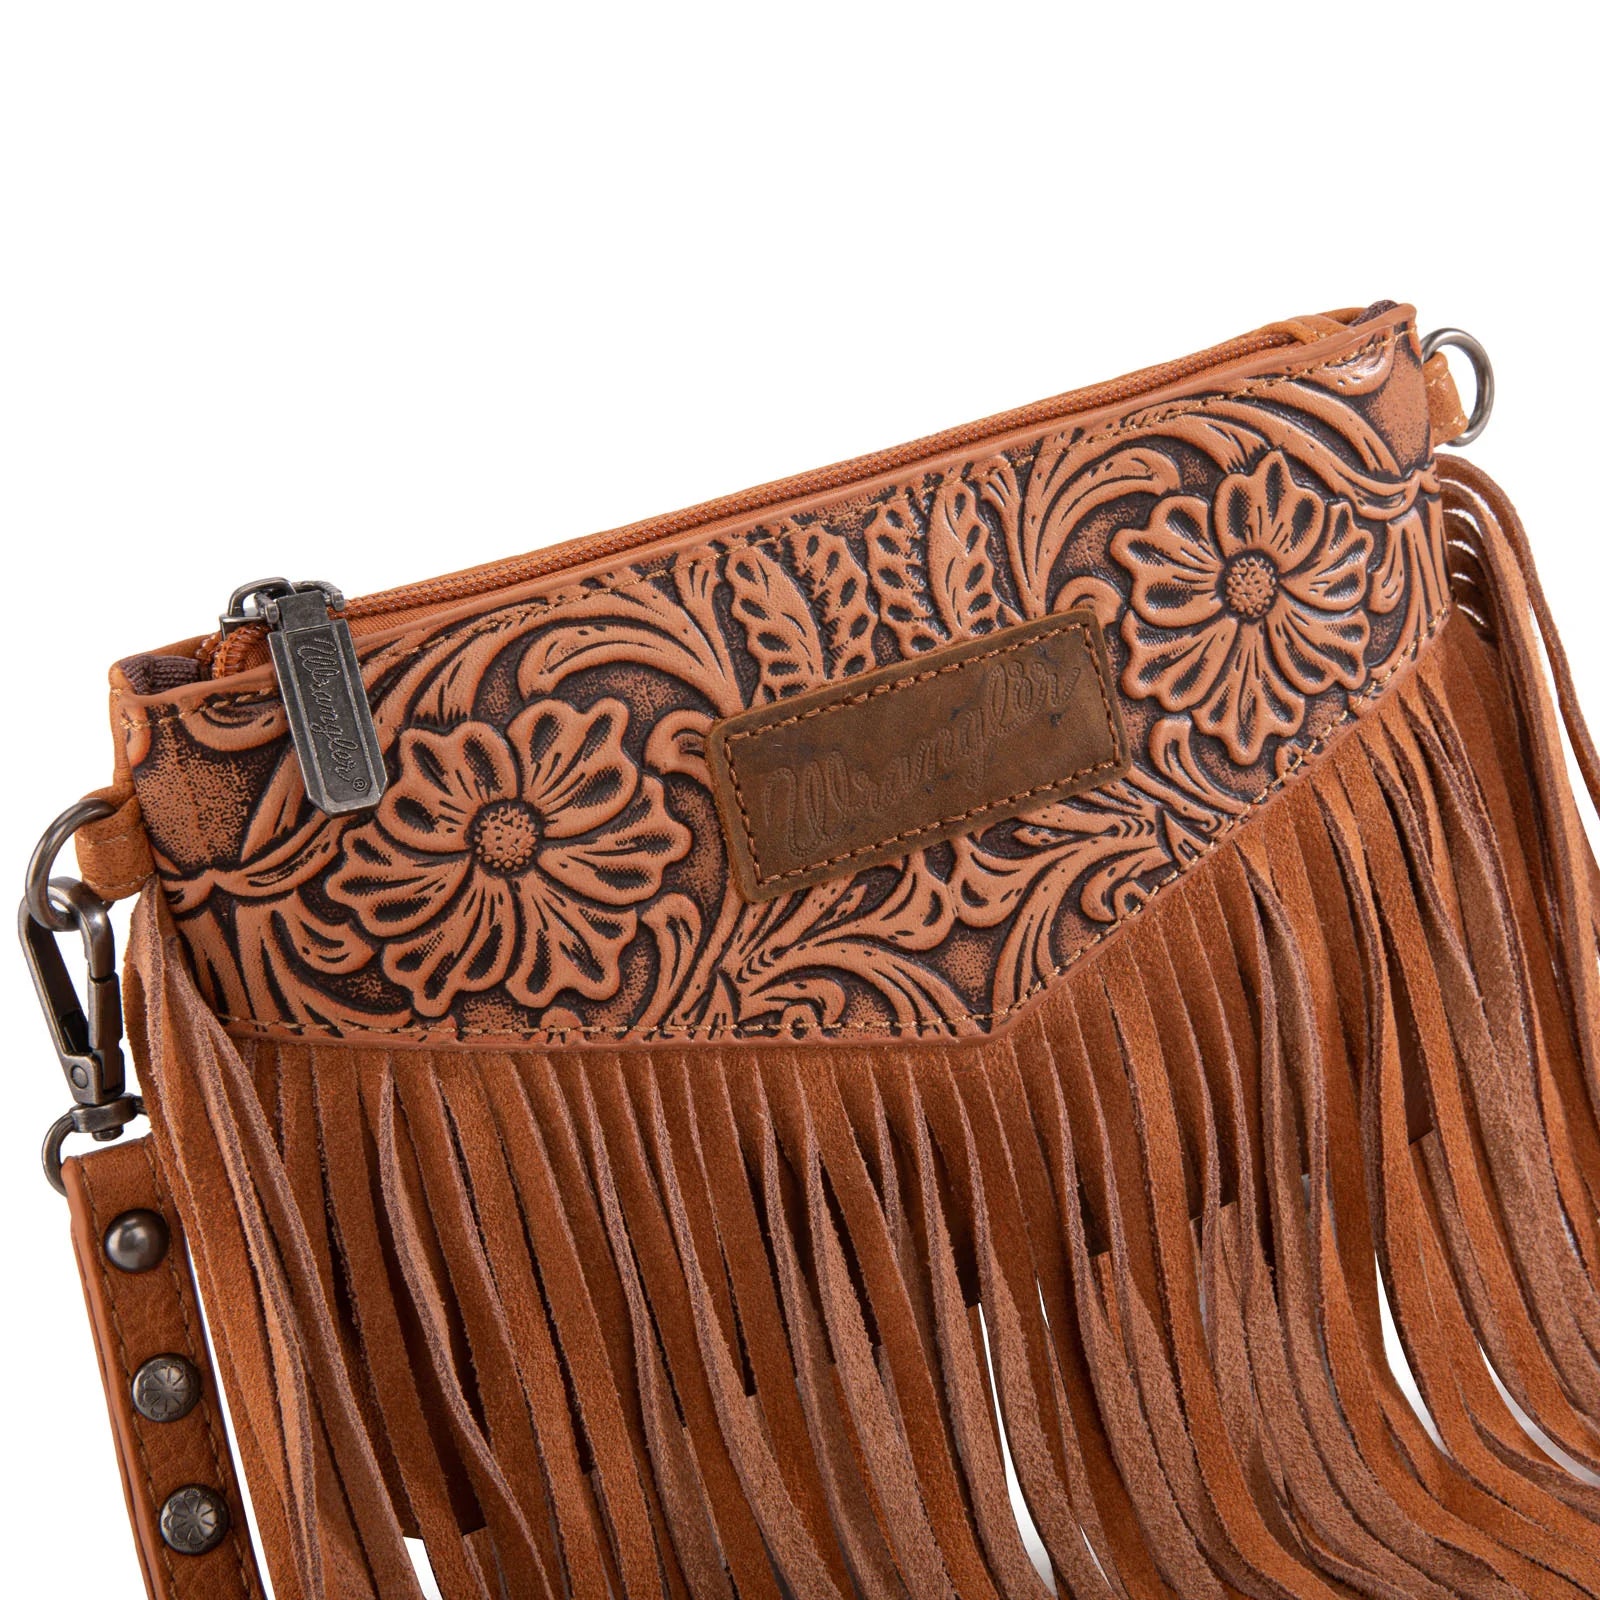 Wrangler Vintage Floral Tooled Collection Fringe Wristlet / Crossbody Bag - Light Brown (6969635373133)